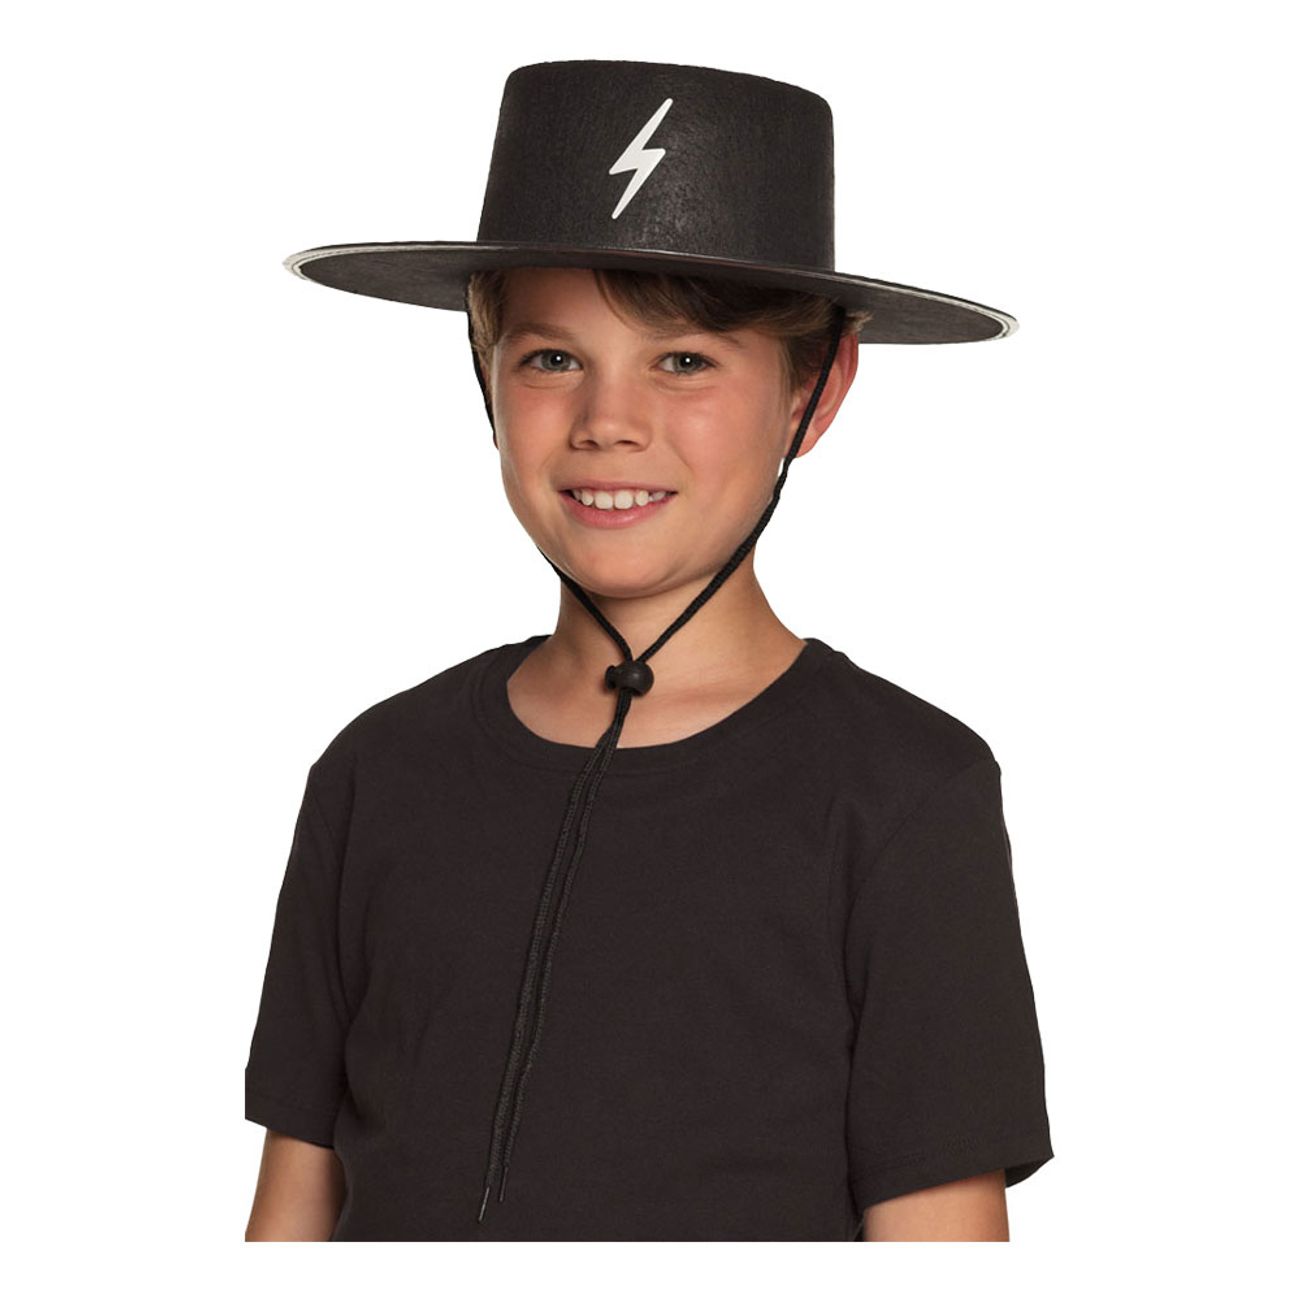 bandit-hatt-barn-med-halsrem-1